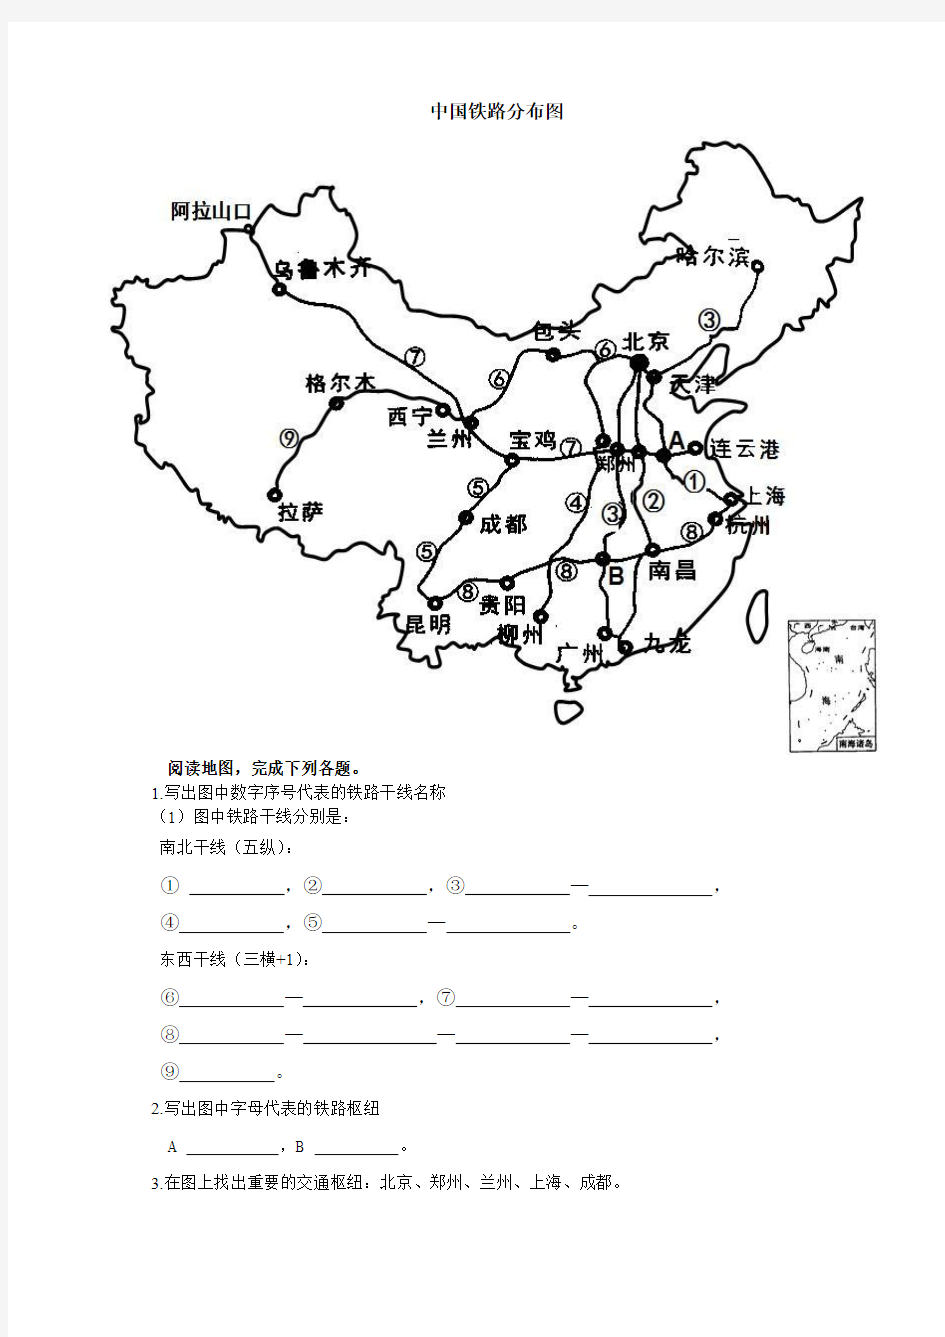 中国铁路分布图填图题